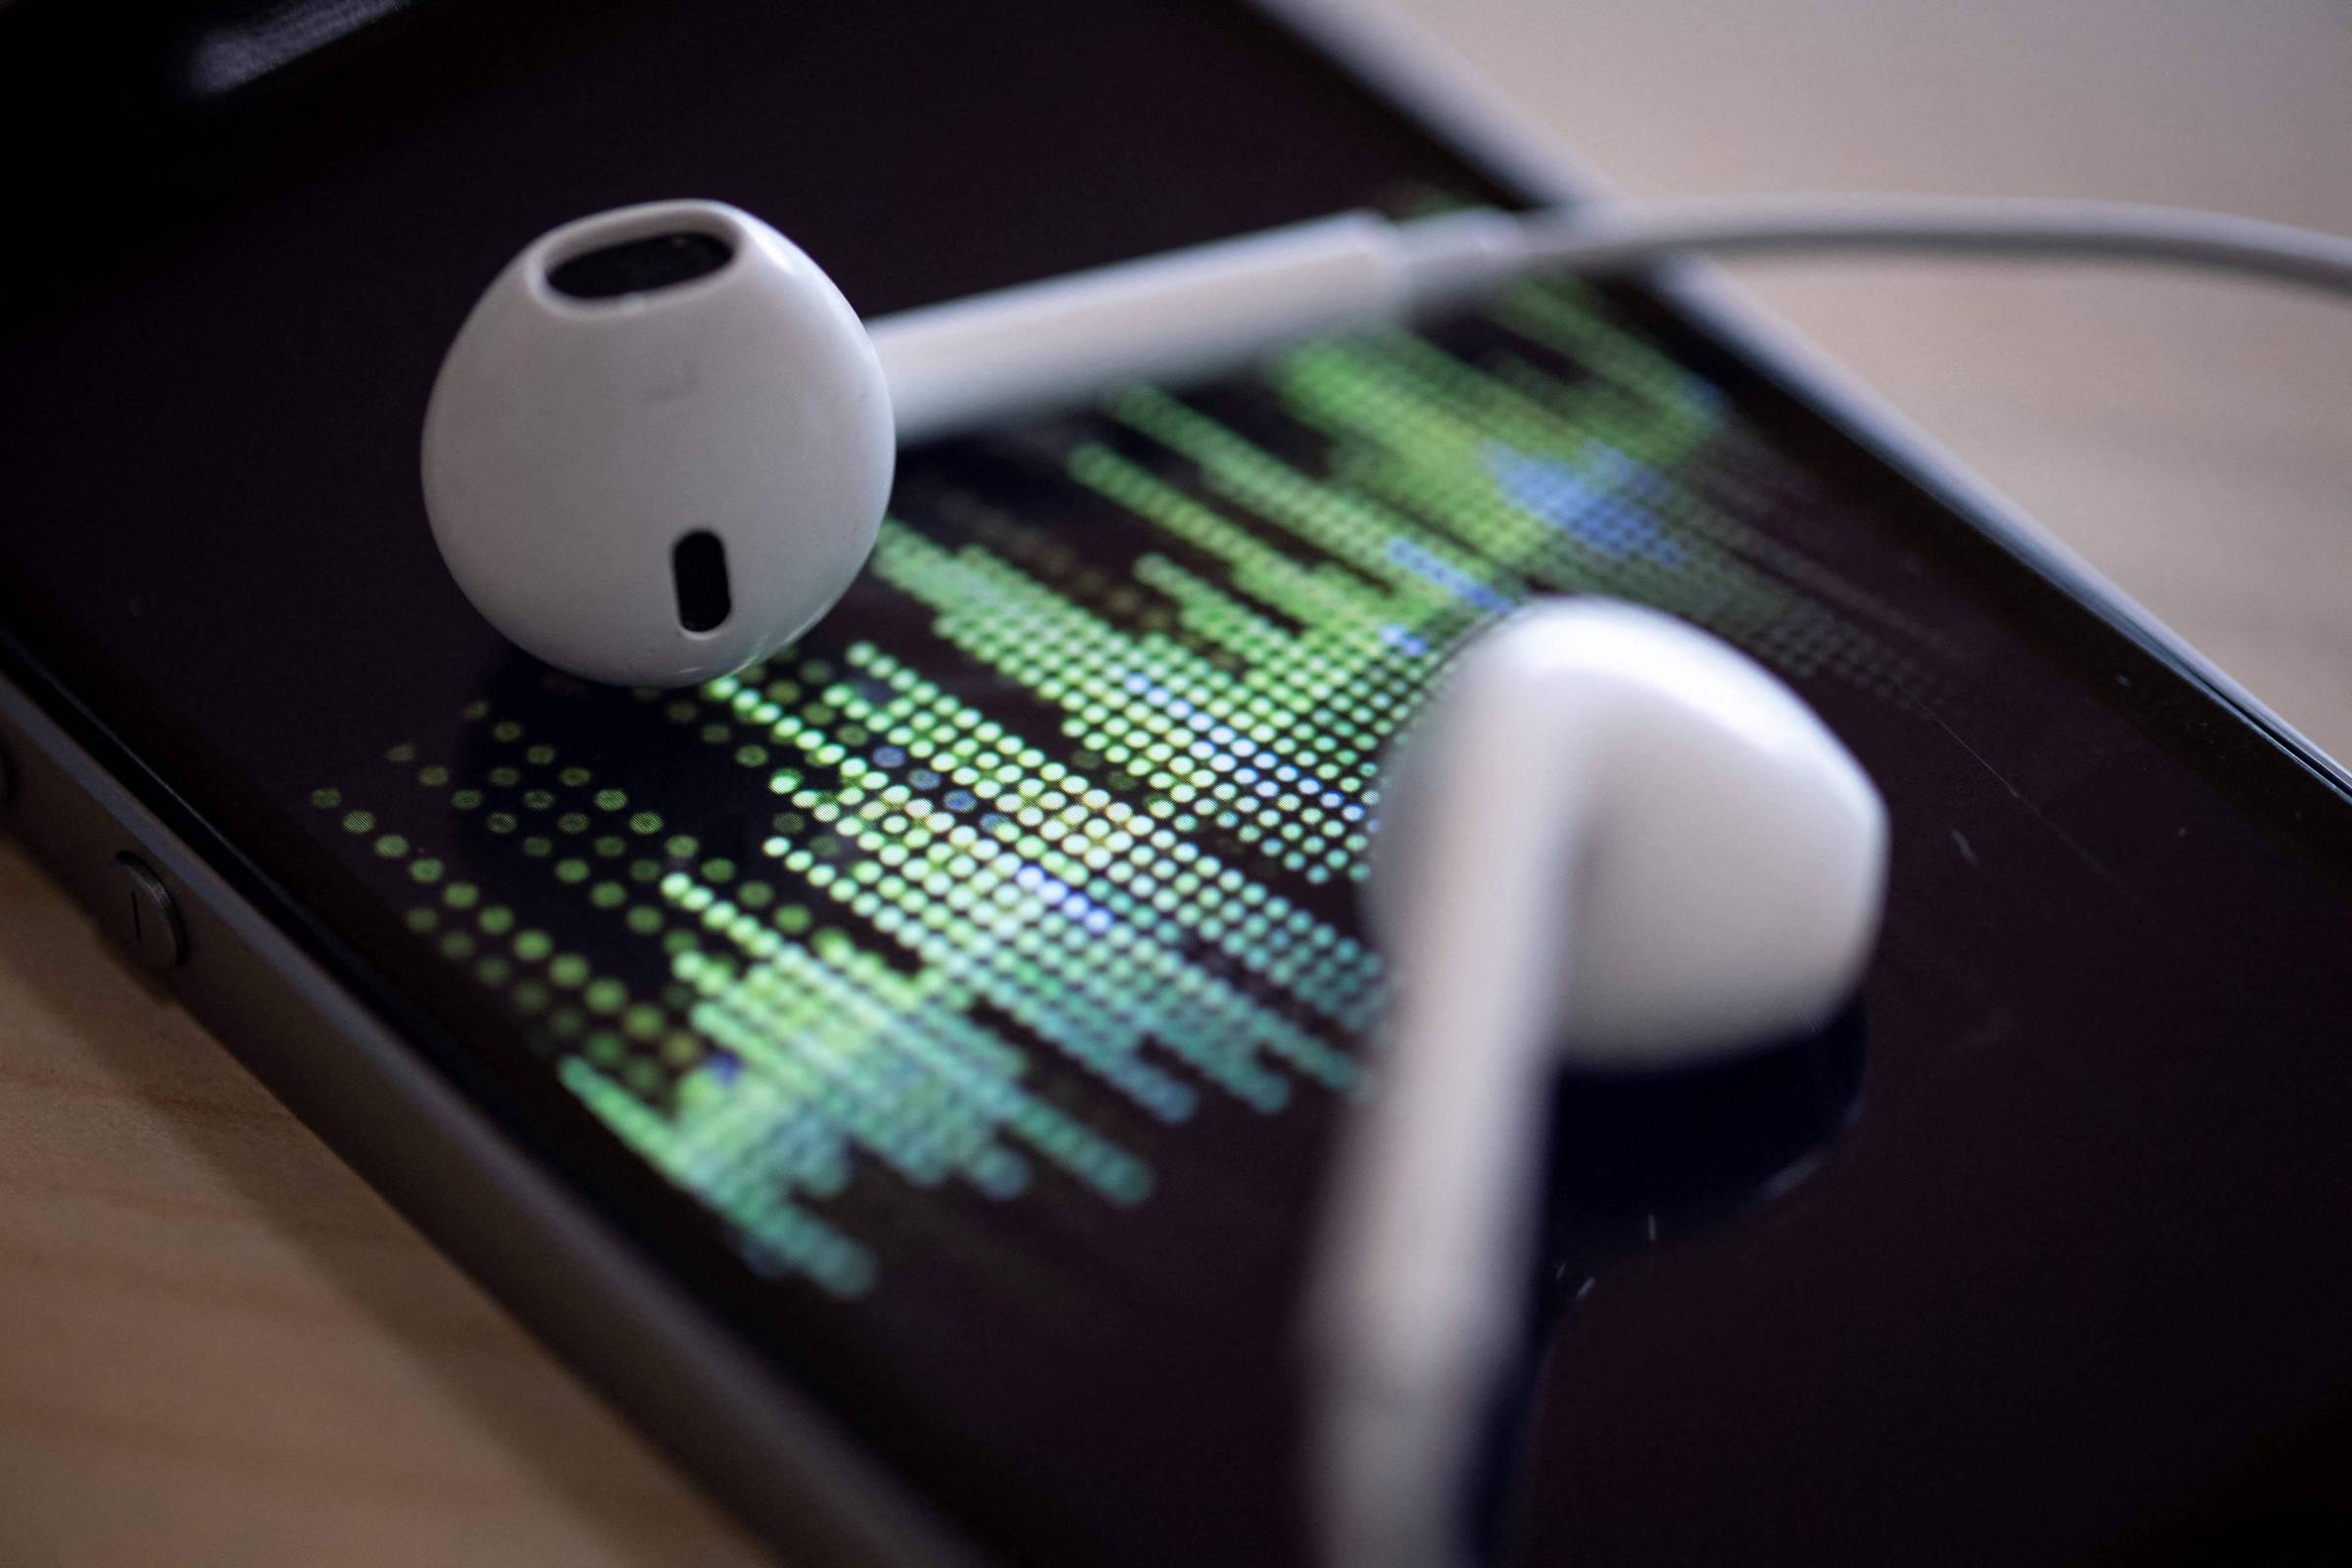 Auriculares sem fios da Apple podem fazer mal à saúde - Tecnologia -  Correio da Manhã